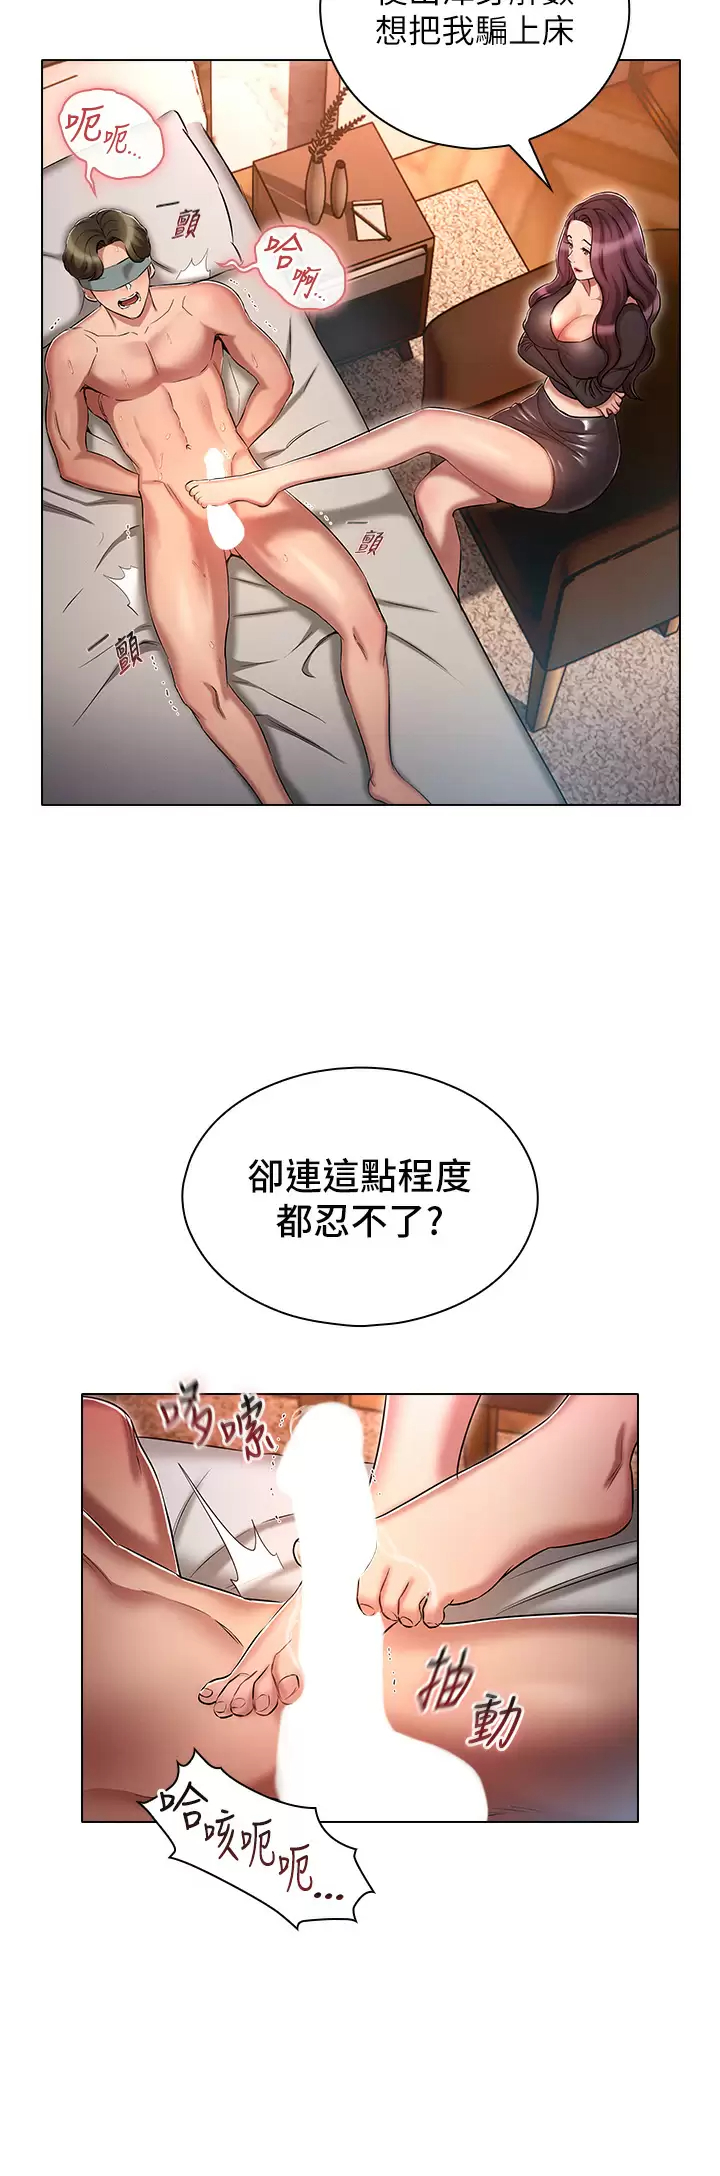 韩国污漫画 魯蛇的多重宇宙 第16话 销魂的脚上功夫 21